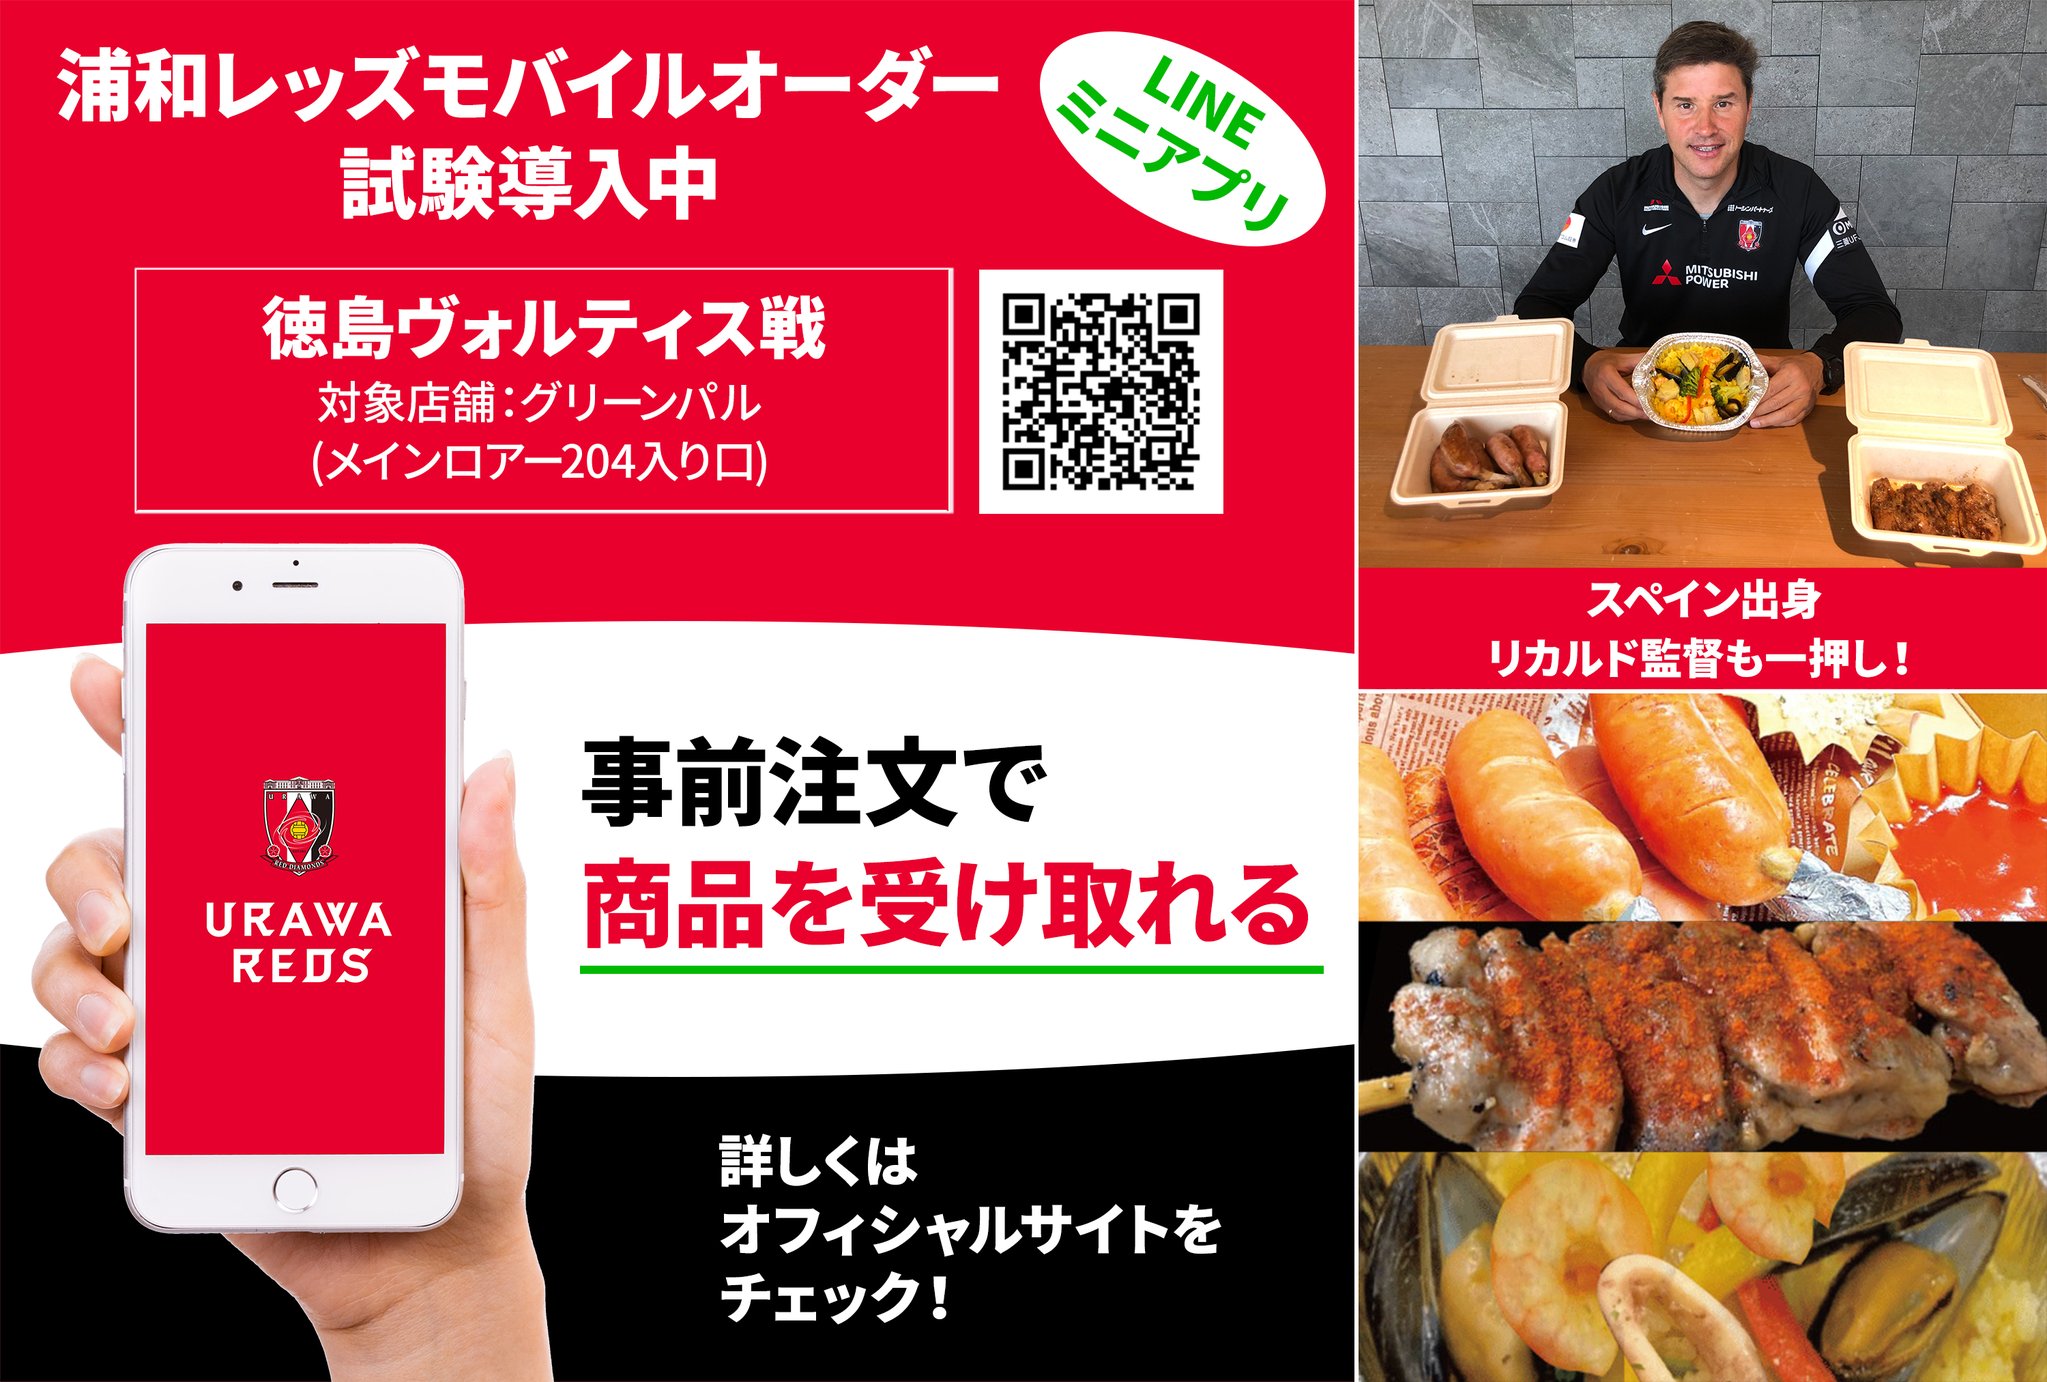 埼玉スタジアムにて飲食売店の浦和レッズモバイルオーダーを試験導入 注文方法は その評判は ペイトク モバイルオーダーまとめ